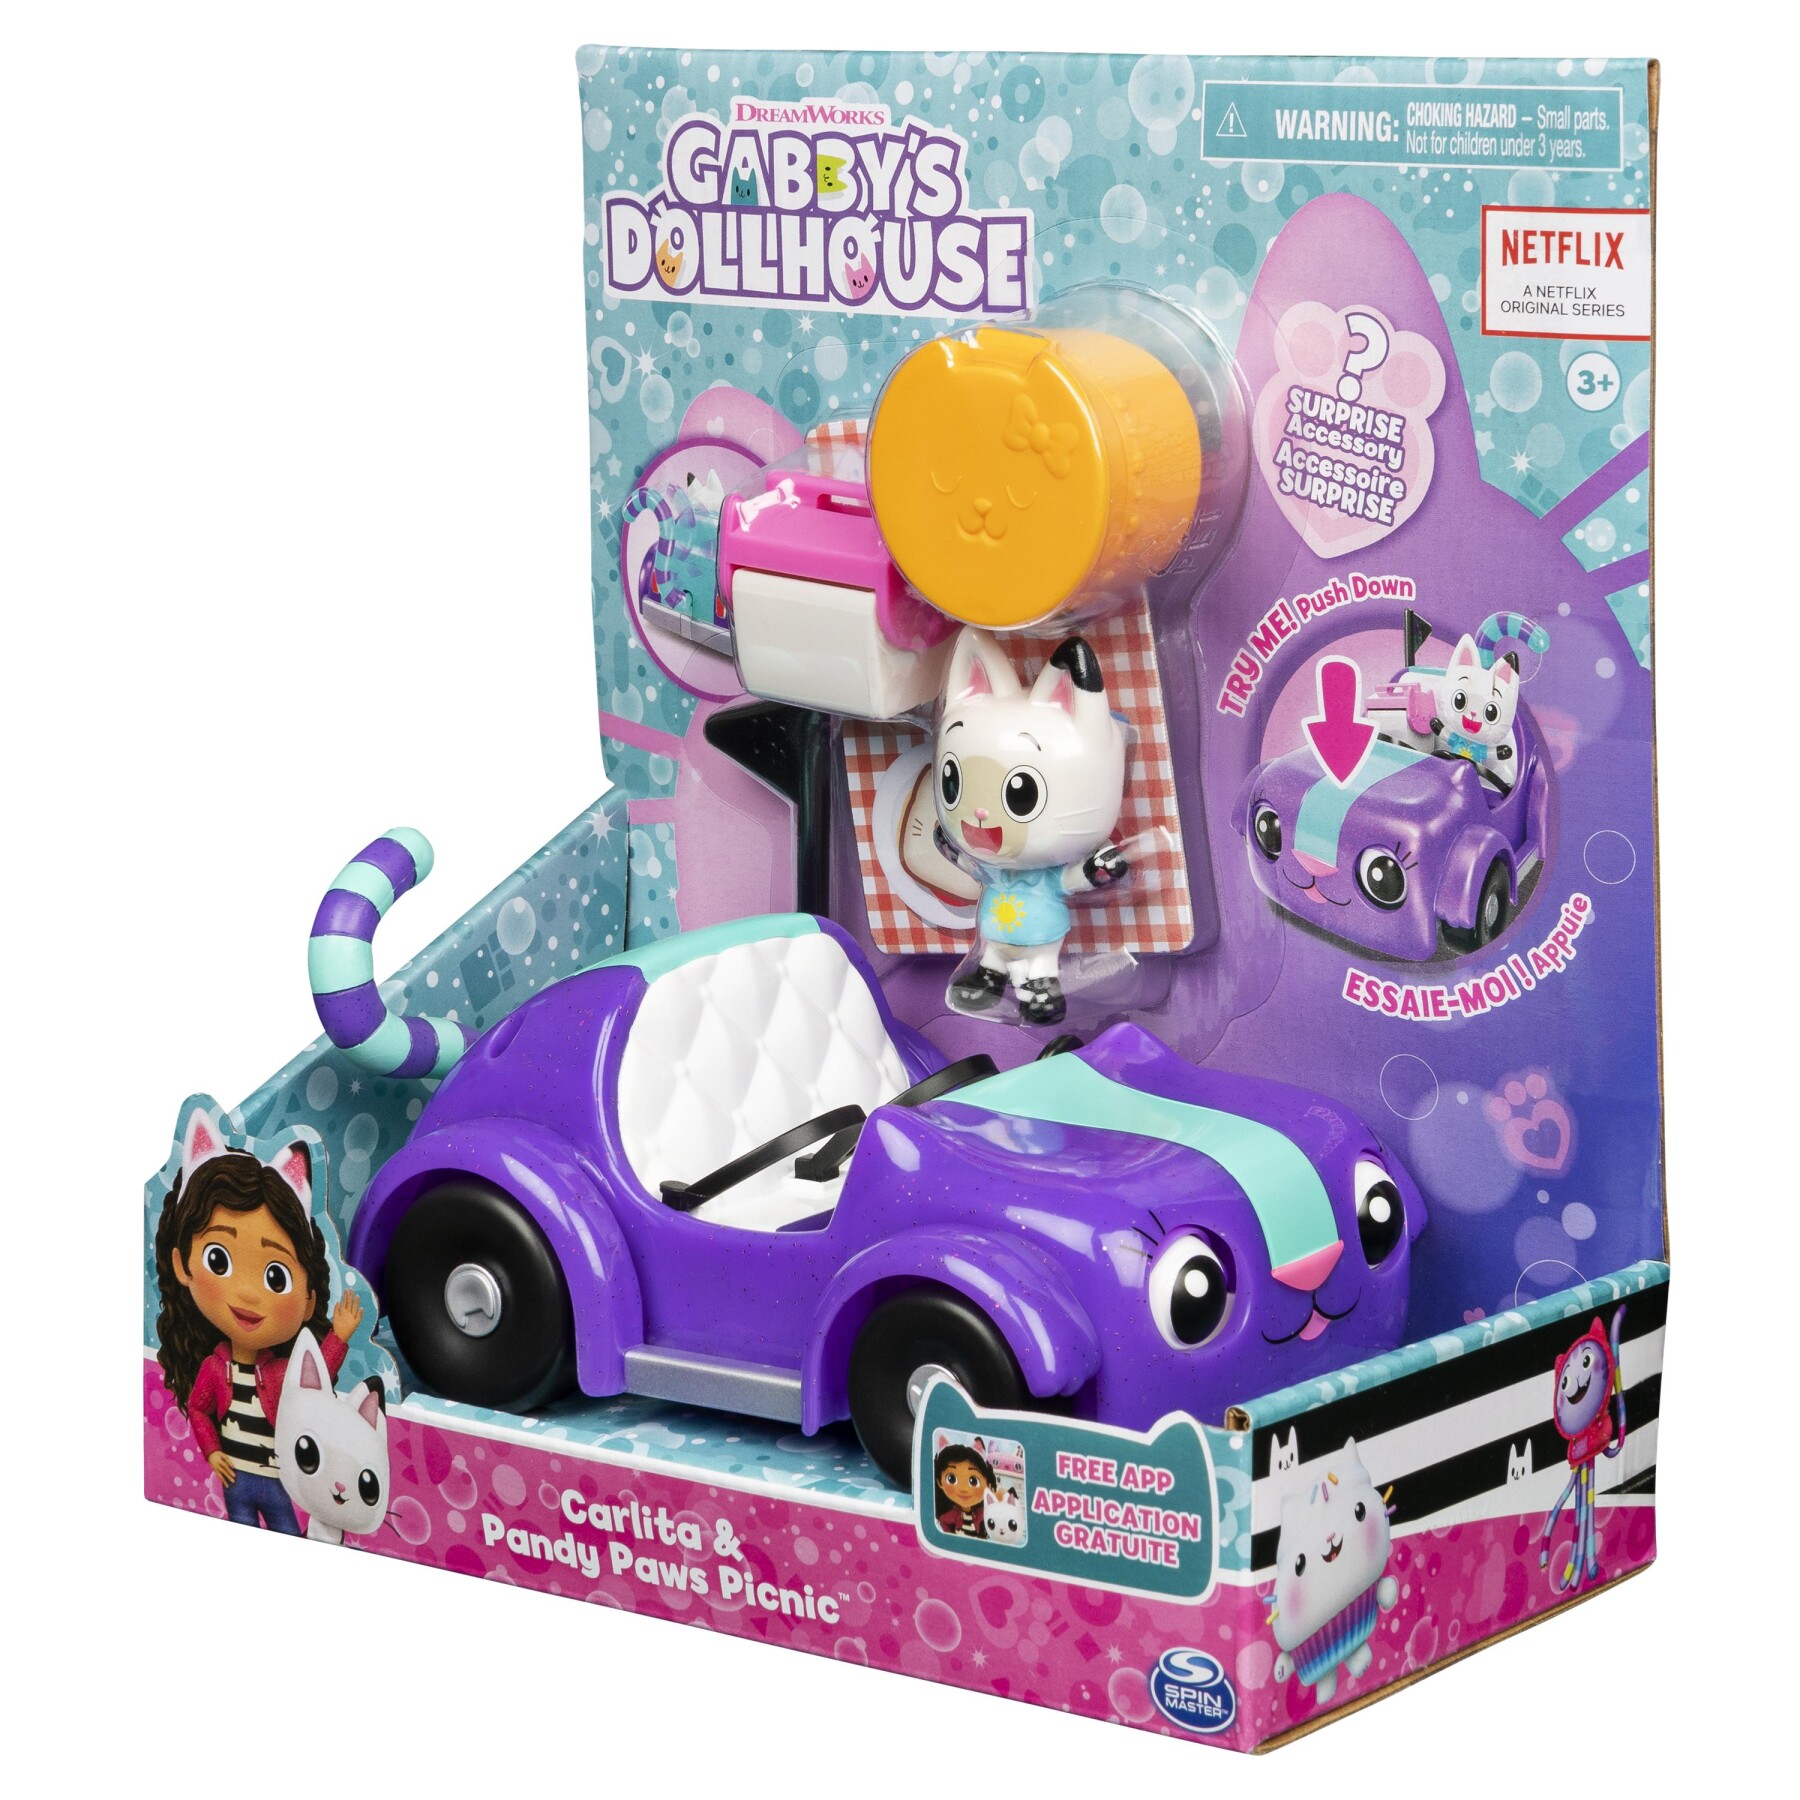 Gabby's dollhouse |la macchina di carlita |giochi gabby's dollhouse per bambini dai 3 anni in su - GABBY'S DOLLHOUSE